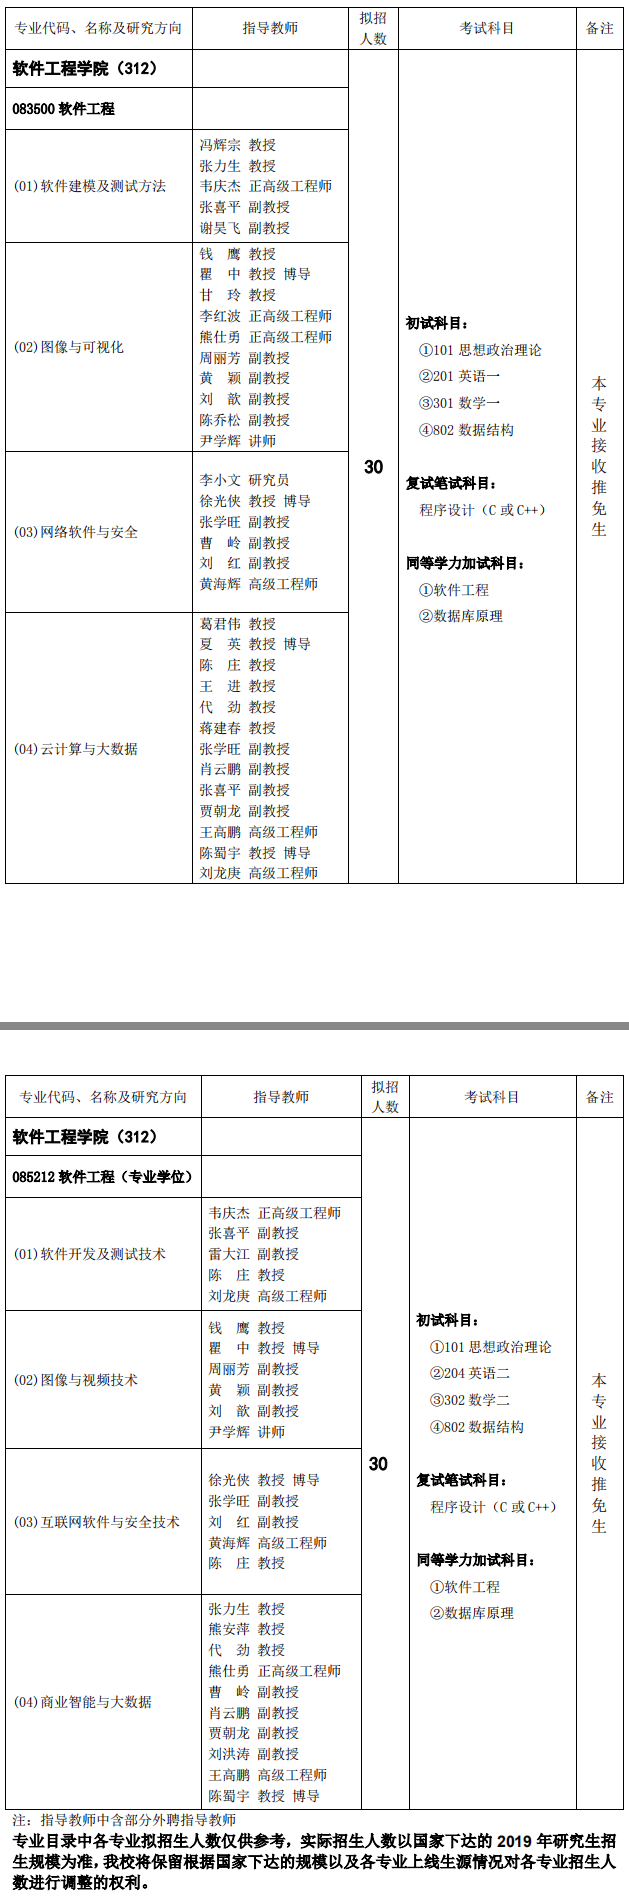 重庆邮电大学软件工程学院2019考研专业目录